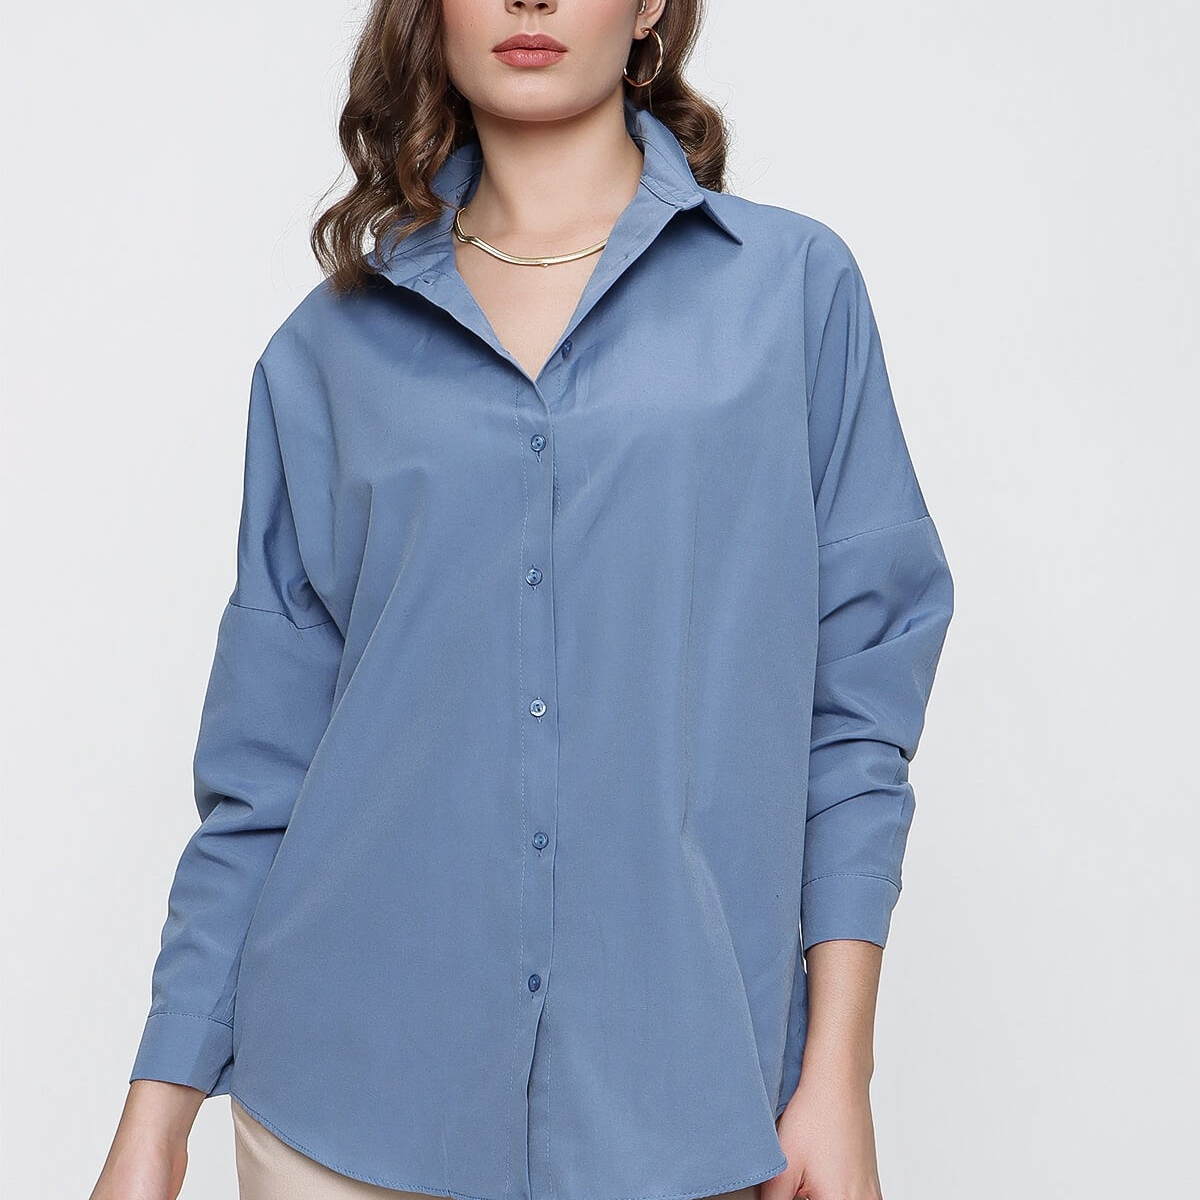 Flo Kadın Mavi Geniş Yaka Düz Gömlek. 3